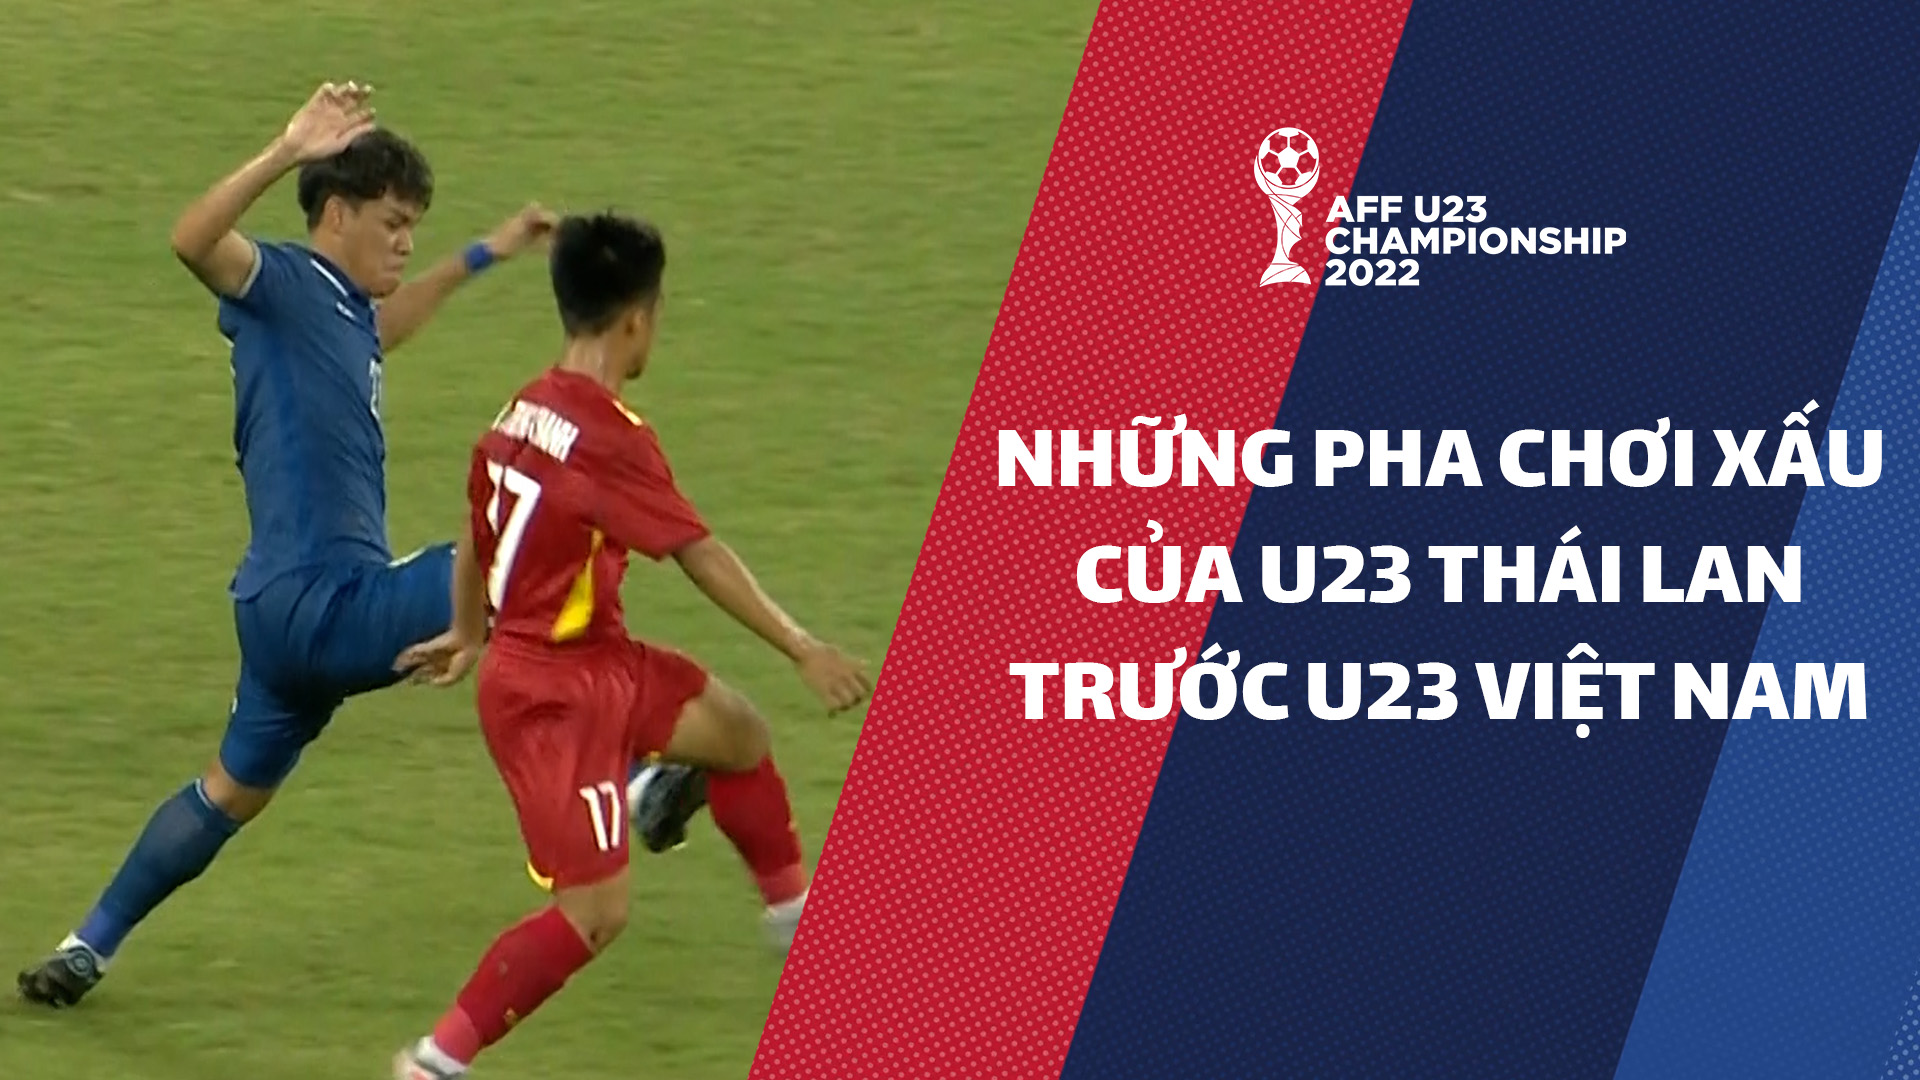 U23 Thái Lan chơi xấu trước U23 Việt Nam ở chung kết - AFF U23 Championship